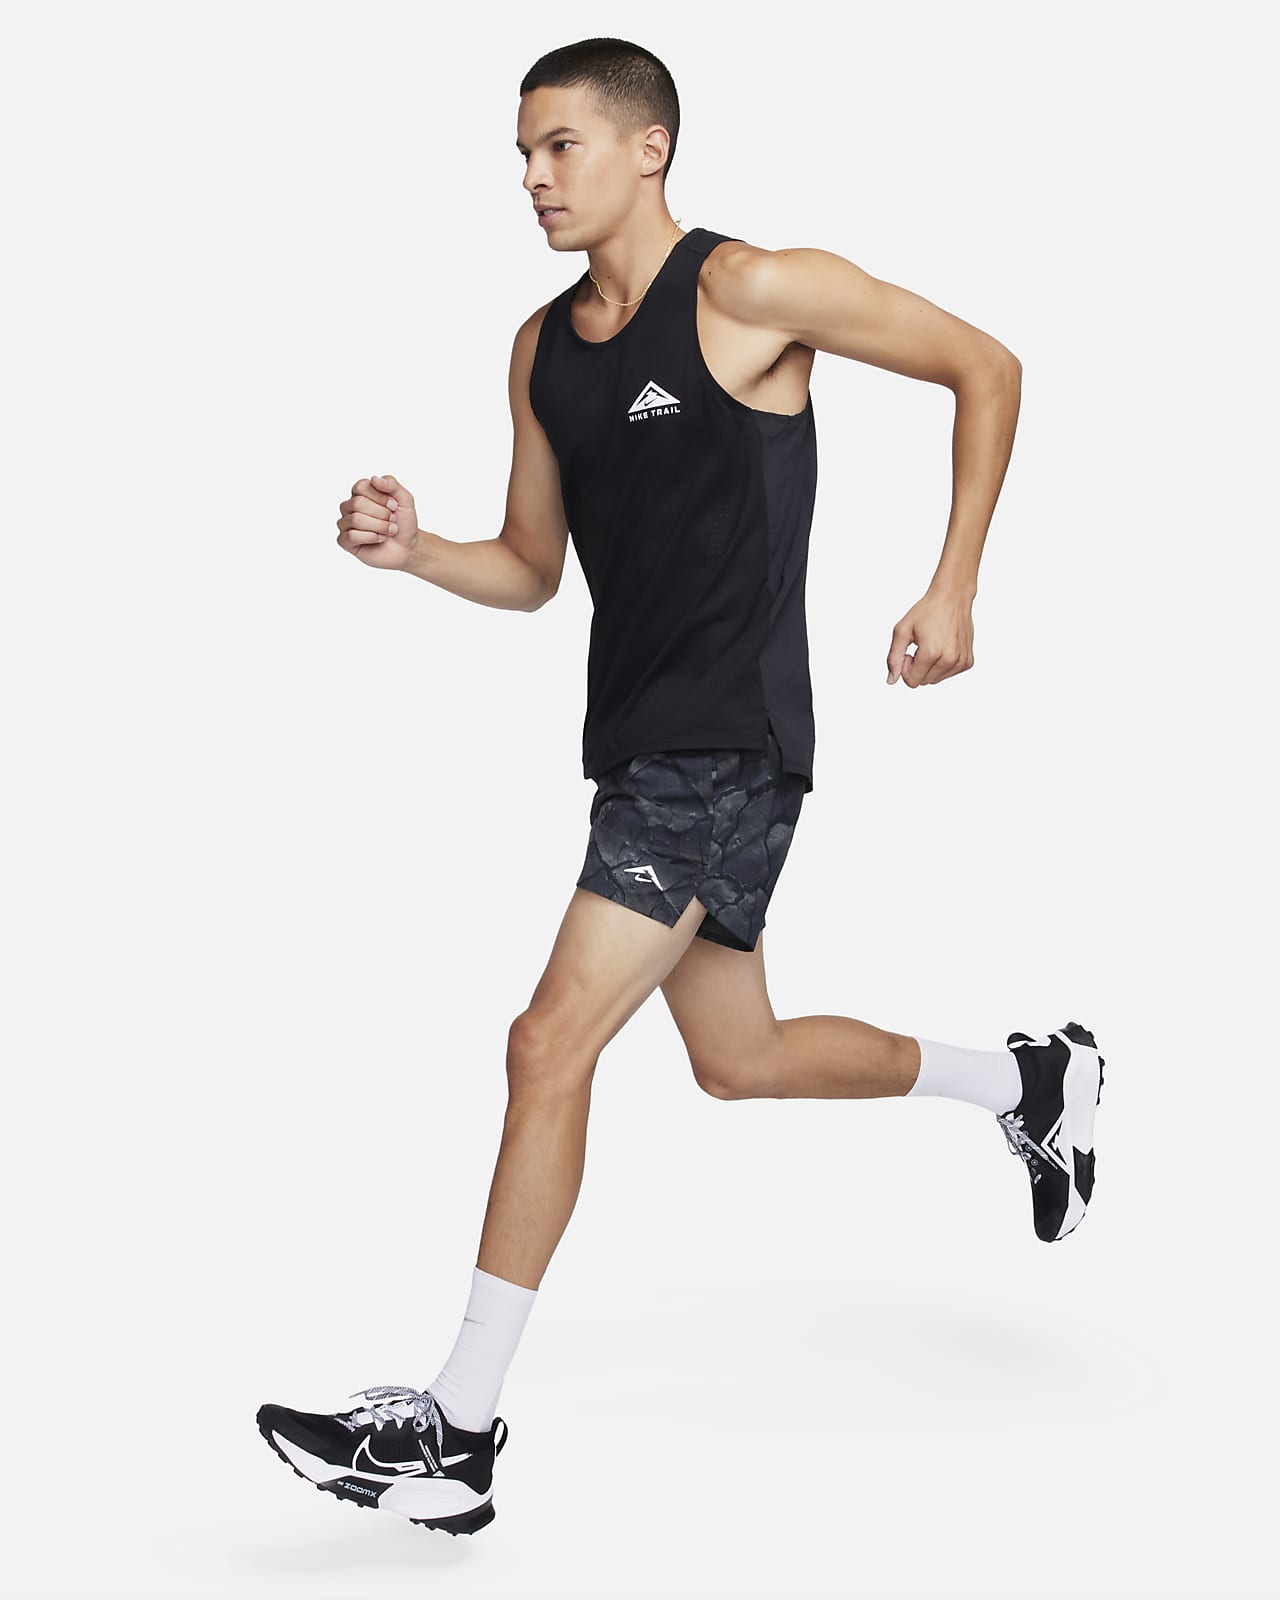 Débardeur Nike Dri-FIT Primary Stmt - Débardeurs - Homme - Entretien  Physique